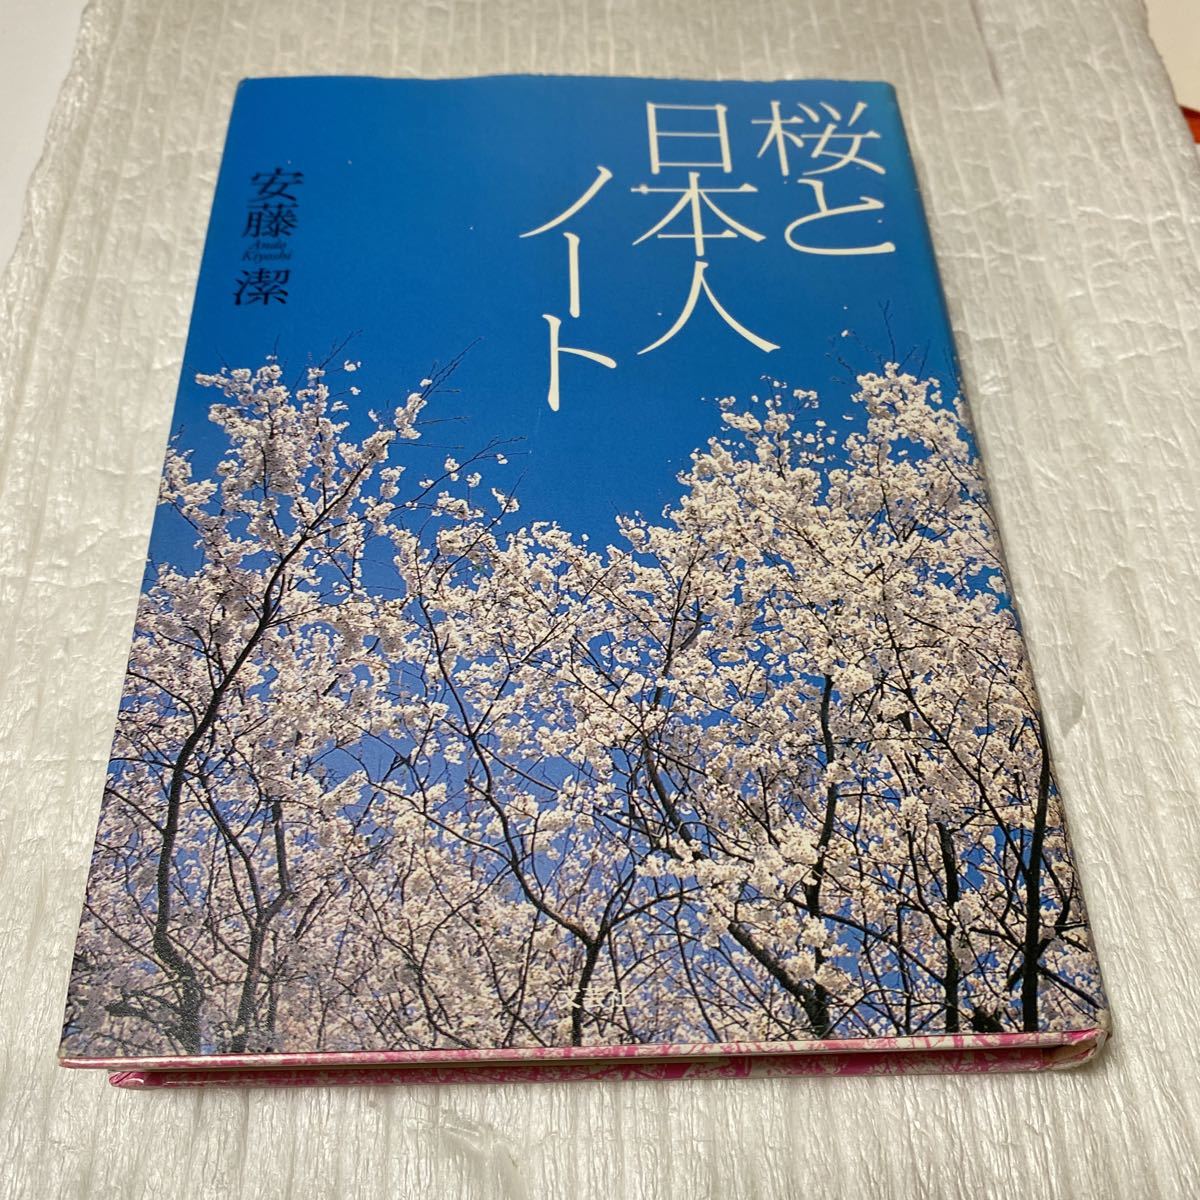 Flores de cerezo y notas sobre los japoneses/Kiyoshi Ando (Autor), Cuadro, Pintura al óleo, Naturaleza, Pintura de paisaje